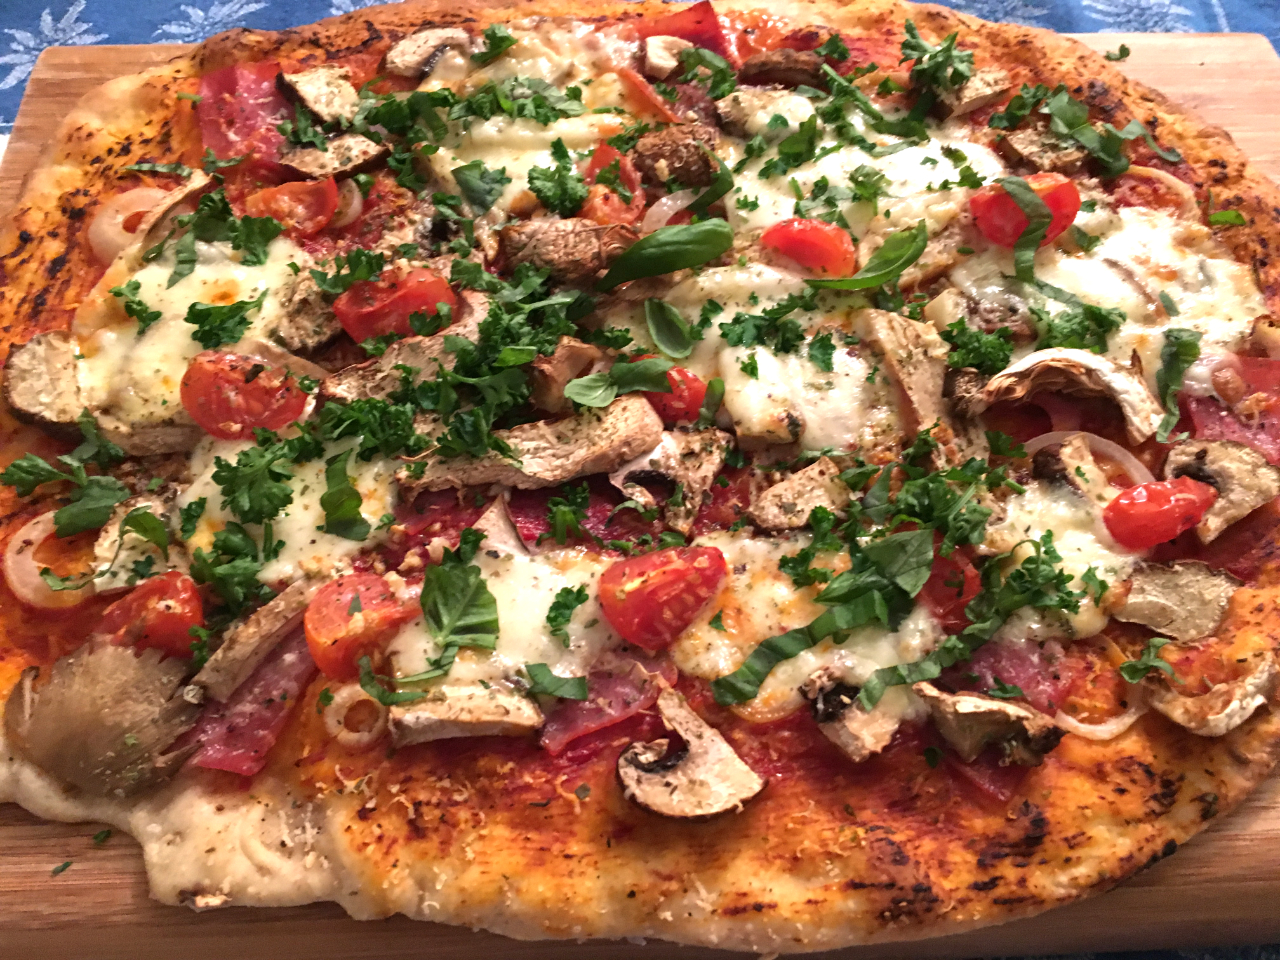 Pizza mit Pilzen - Food Blog Kochphilosophen